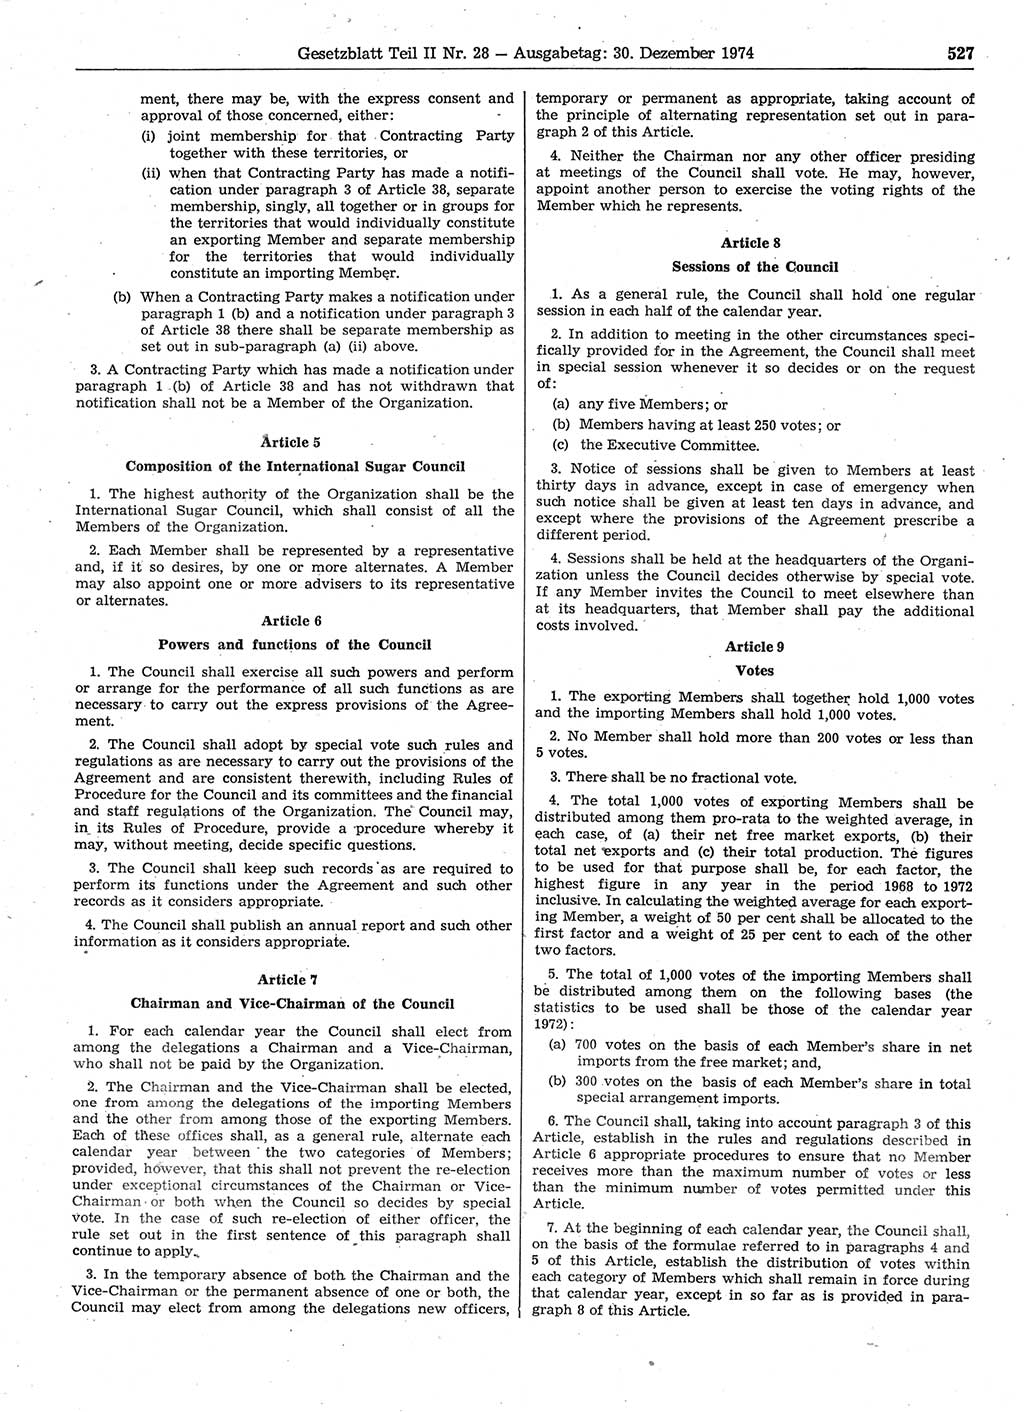 Gesetzblatt (GBl.) der Deutschen Demokratischen Republik (DDR) Teil ⅠⅠ 1974, Seite 527 (GBl. DDR ⅠⅠ 1974, S. 527)